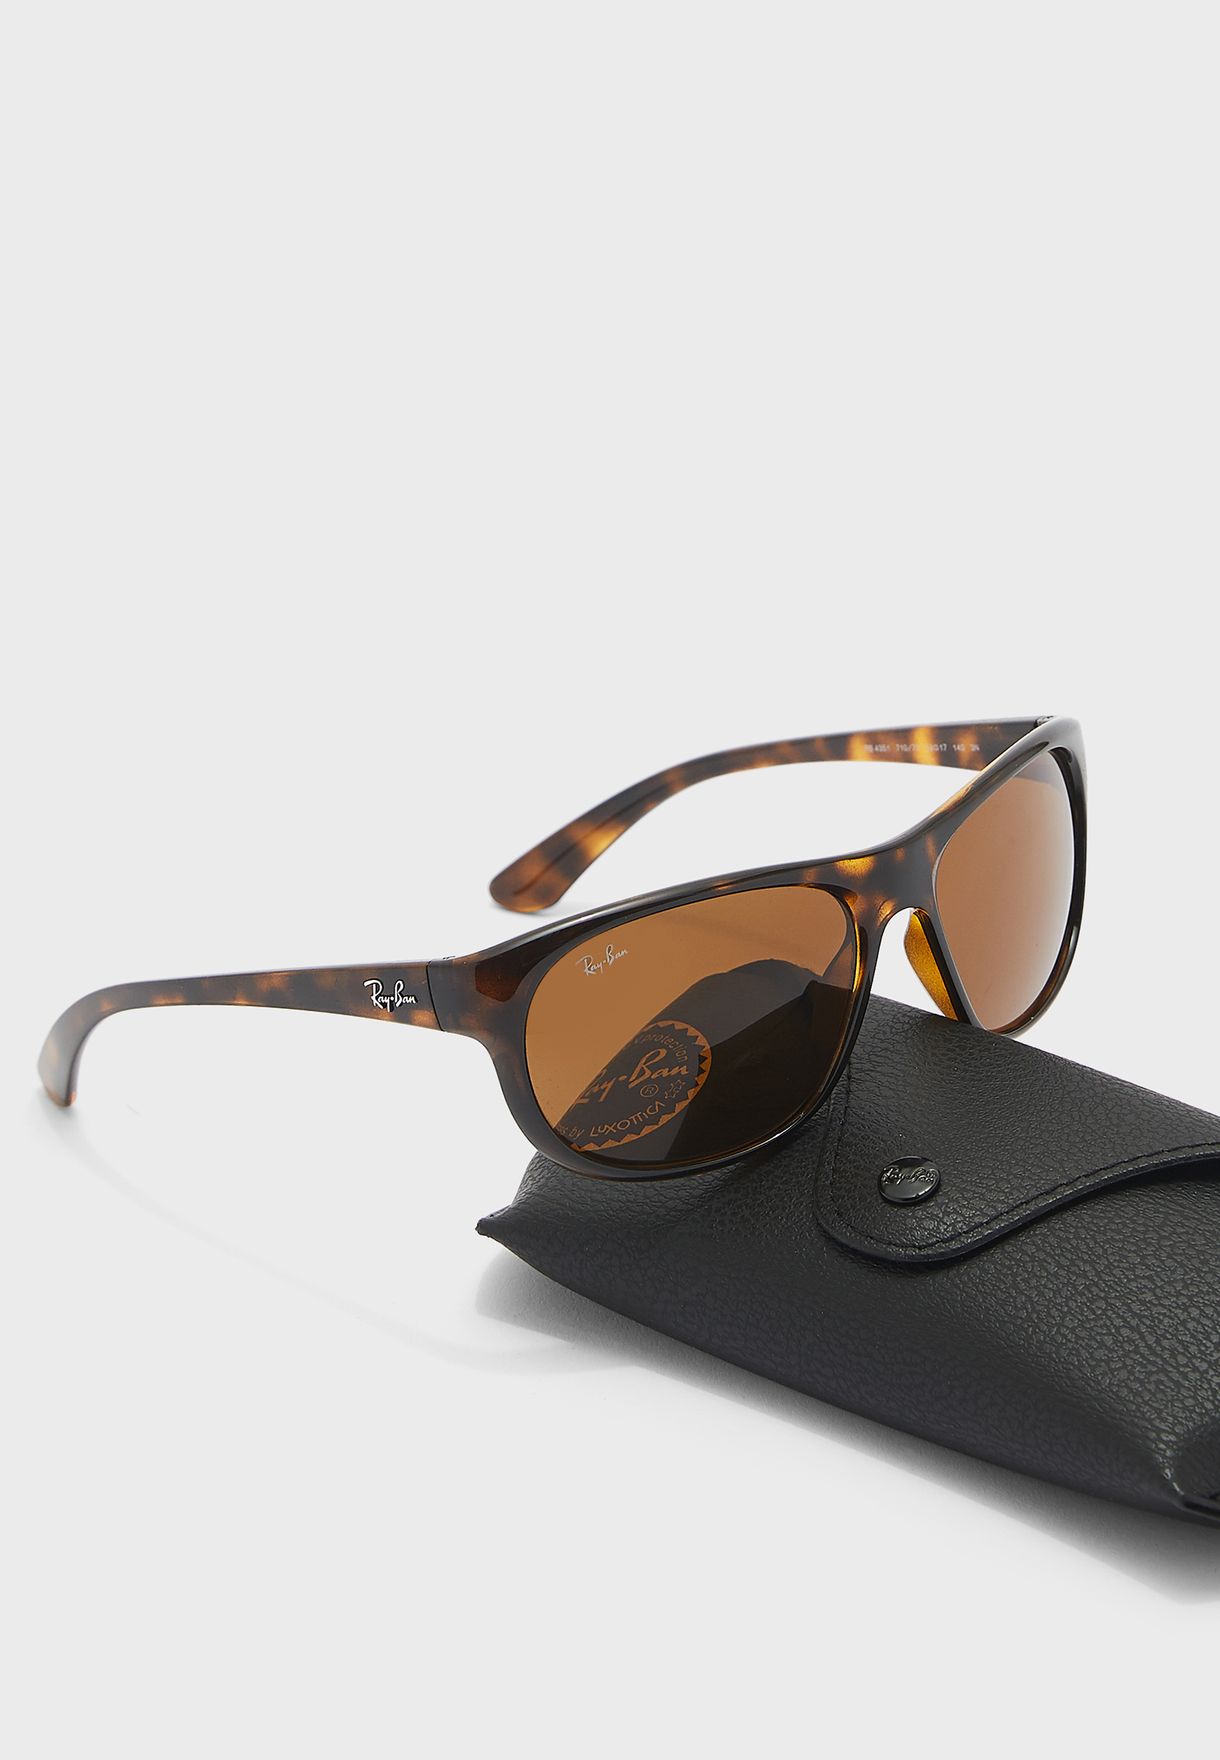 0Rb4351 Square Sunglasses